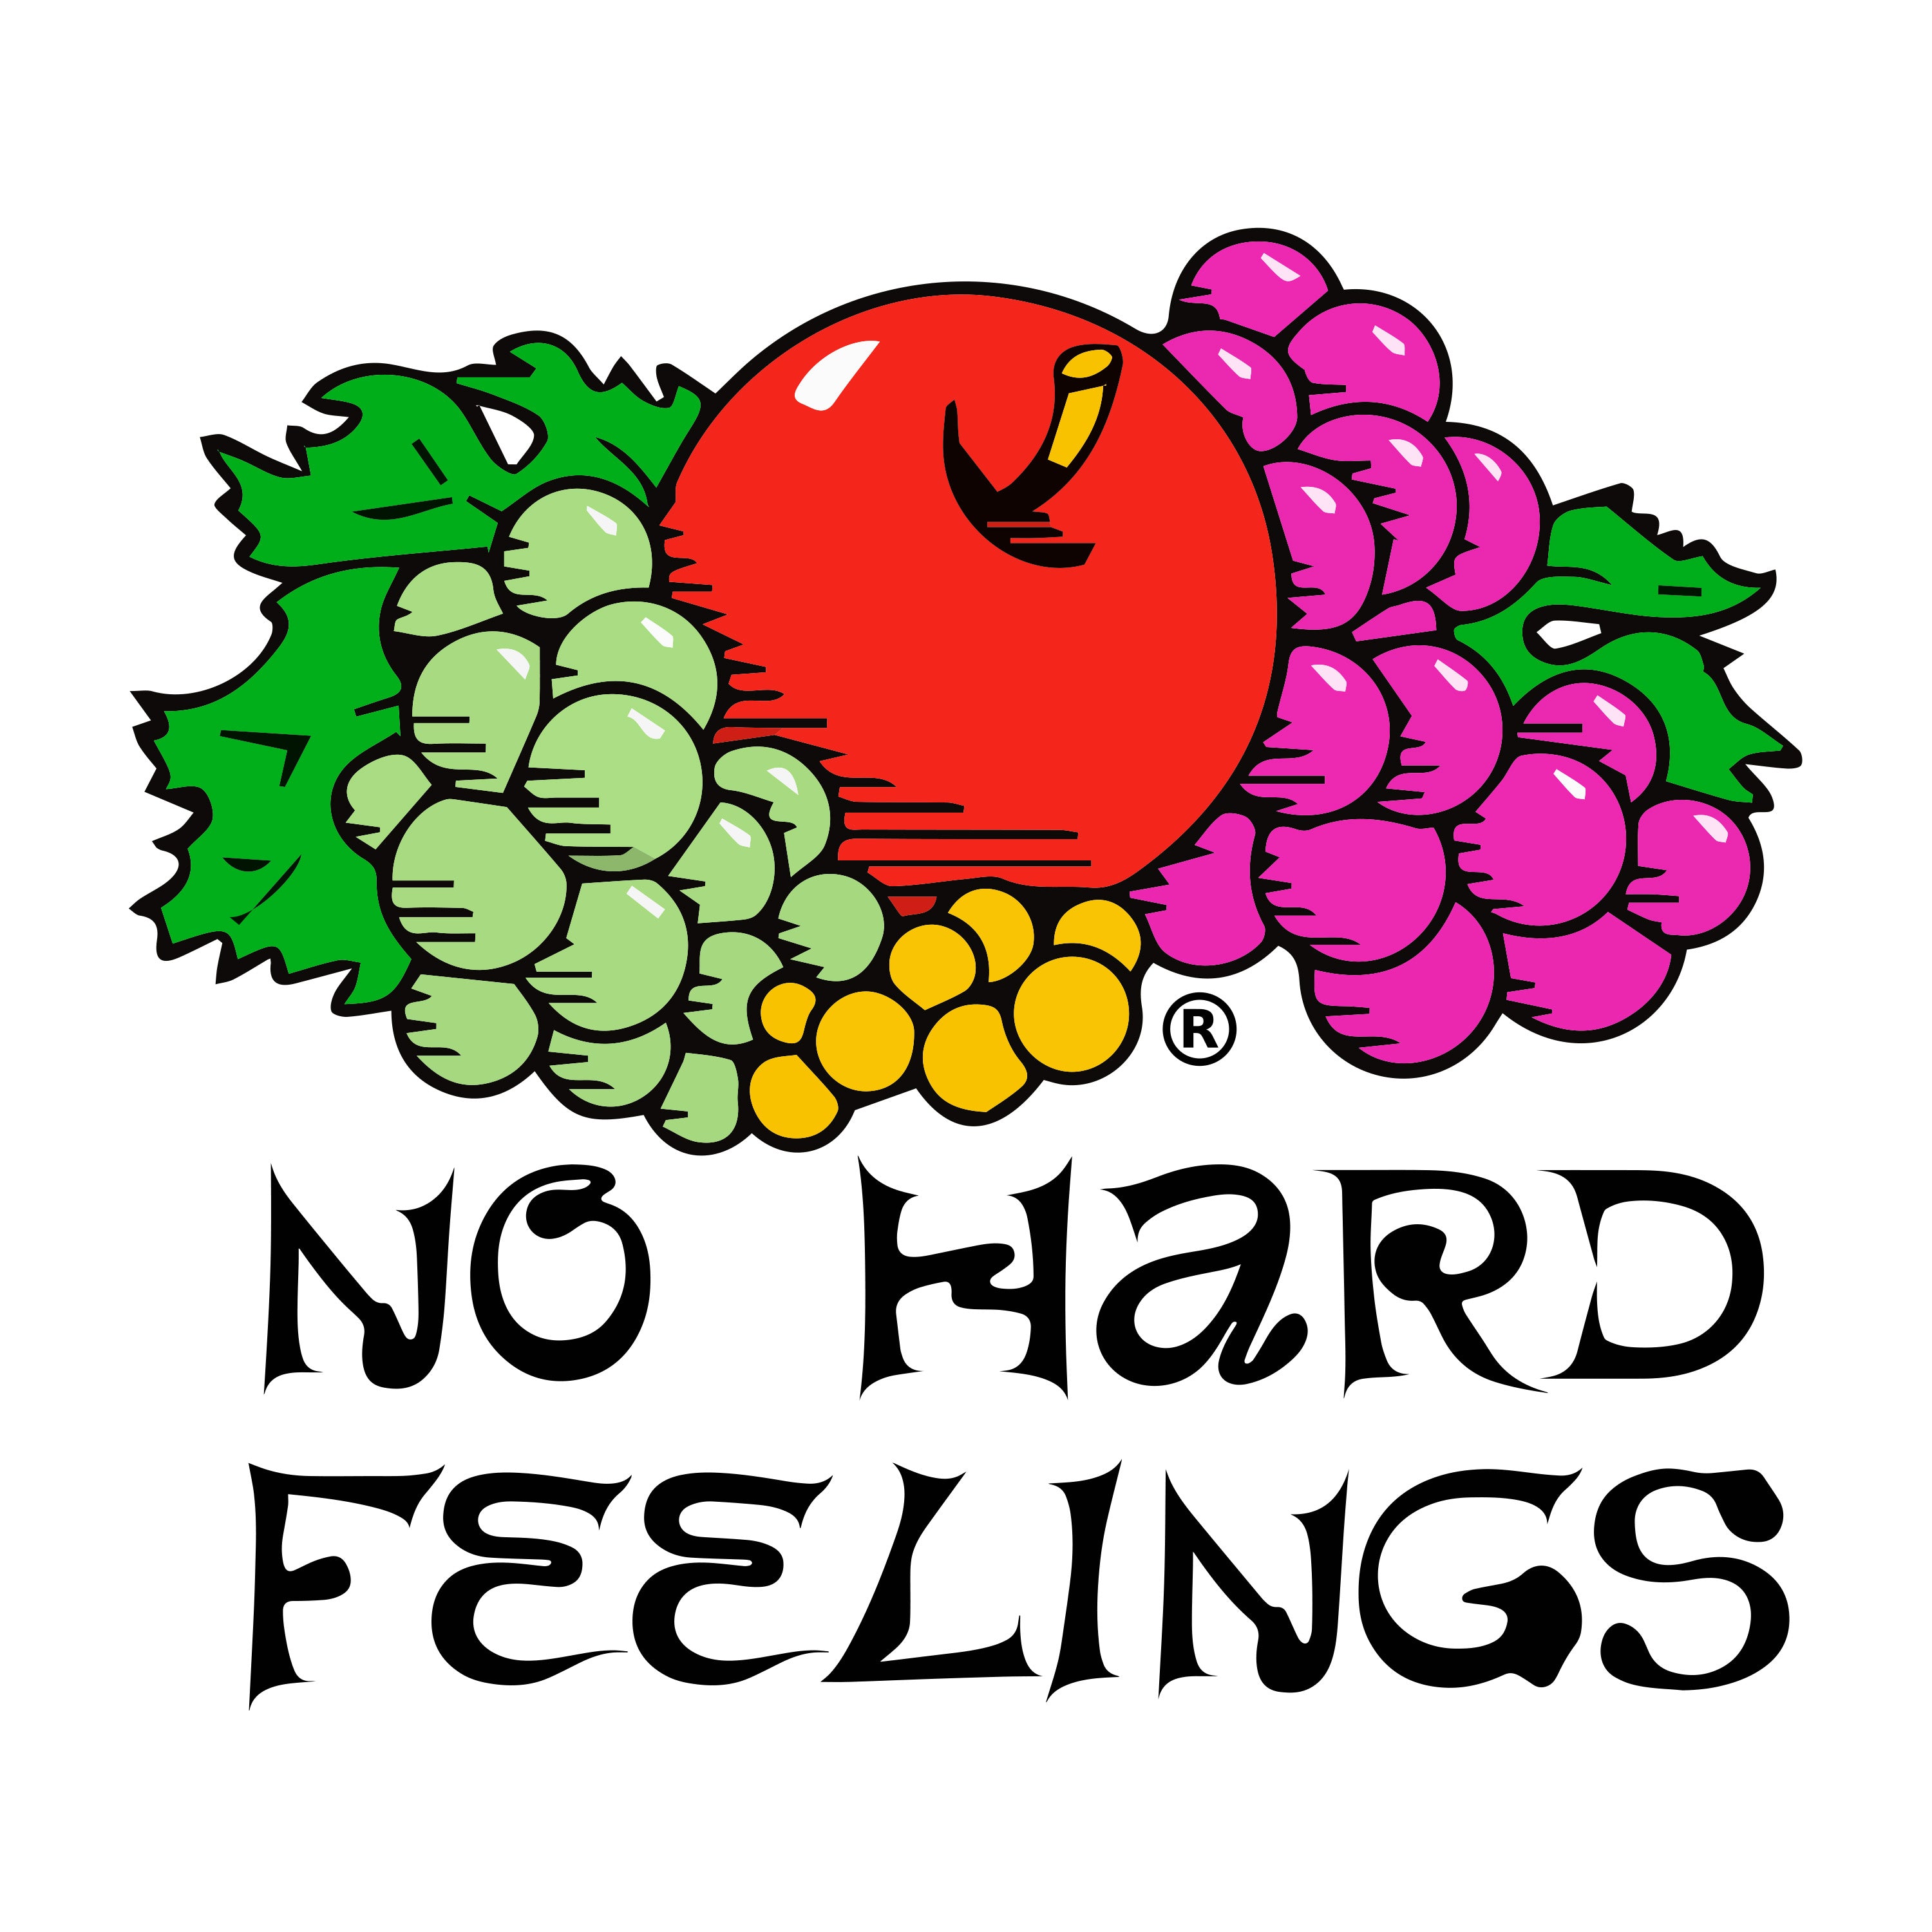 No Hard Feelings 'Super Merch' Logo Tee